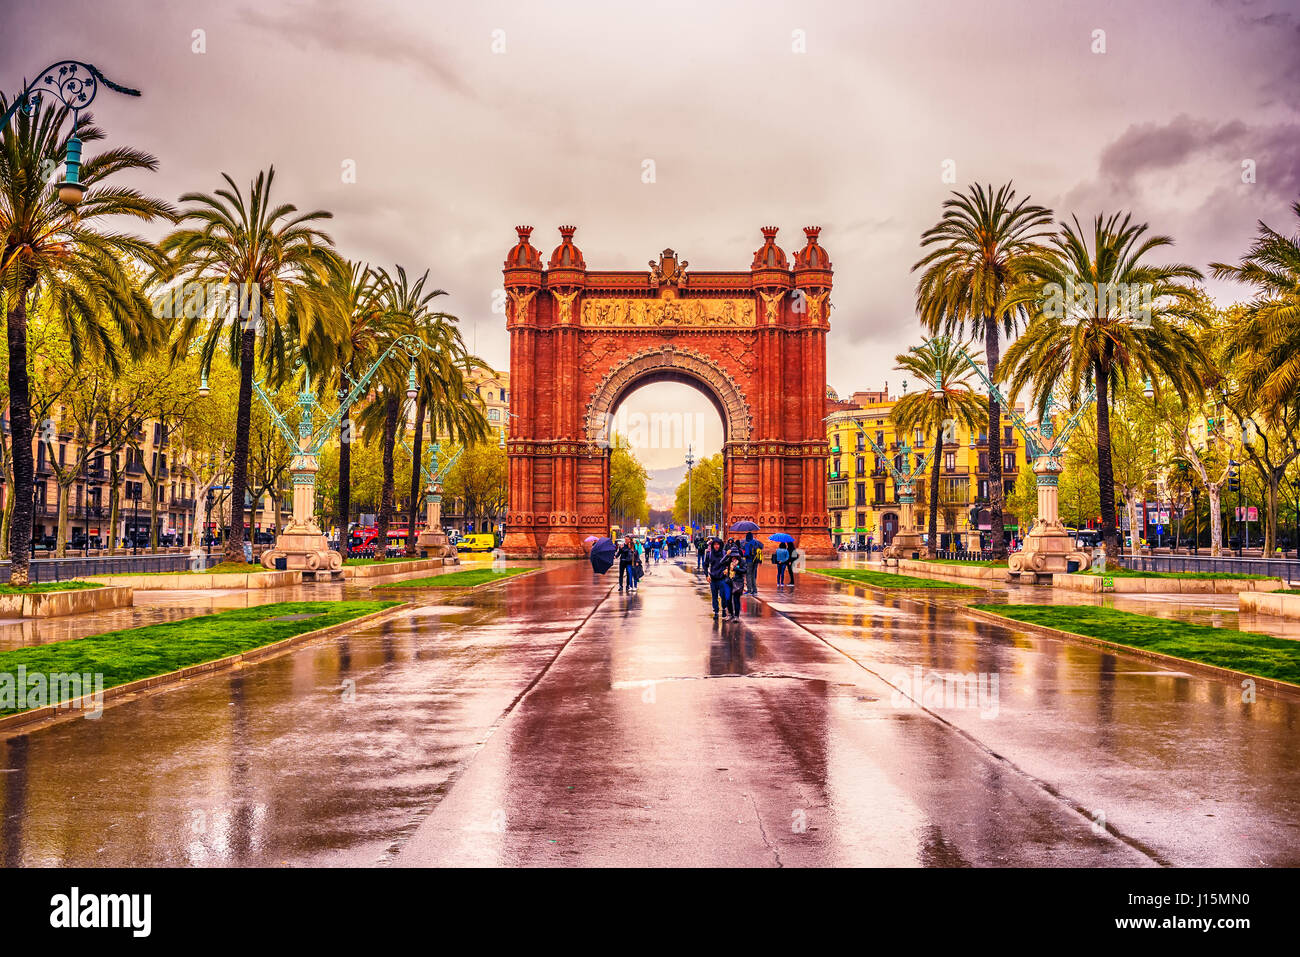 L'Arc de Triomf, Arco de Triunfo en espagnol, un arc triomphal dans la ville de Barcelone, en Catalogne, Espagne Banque D'Images